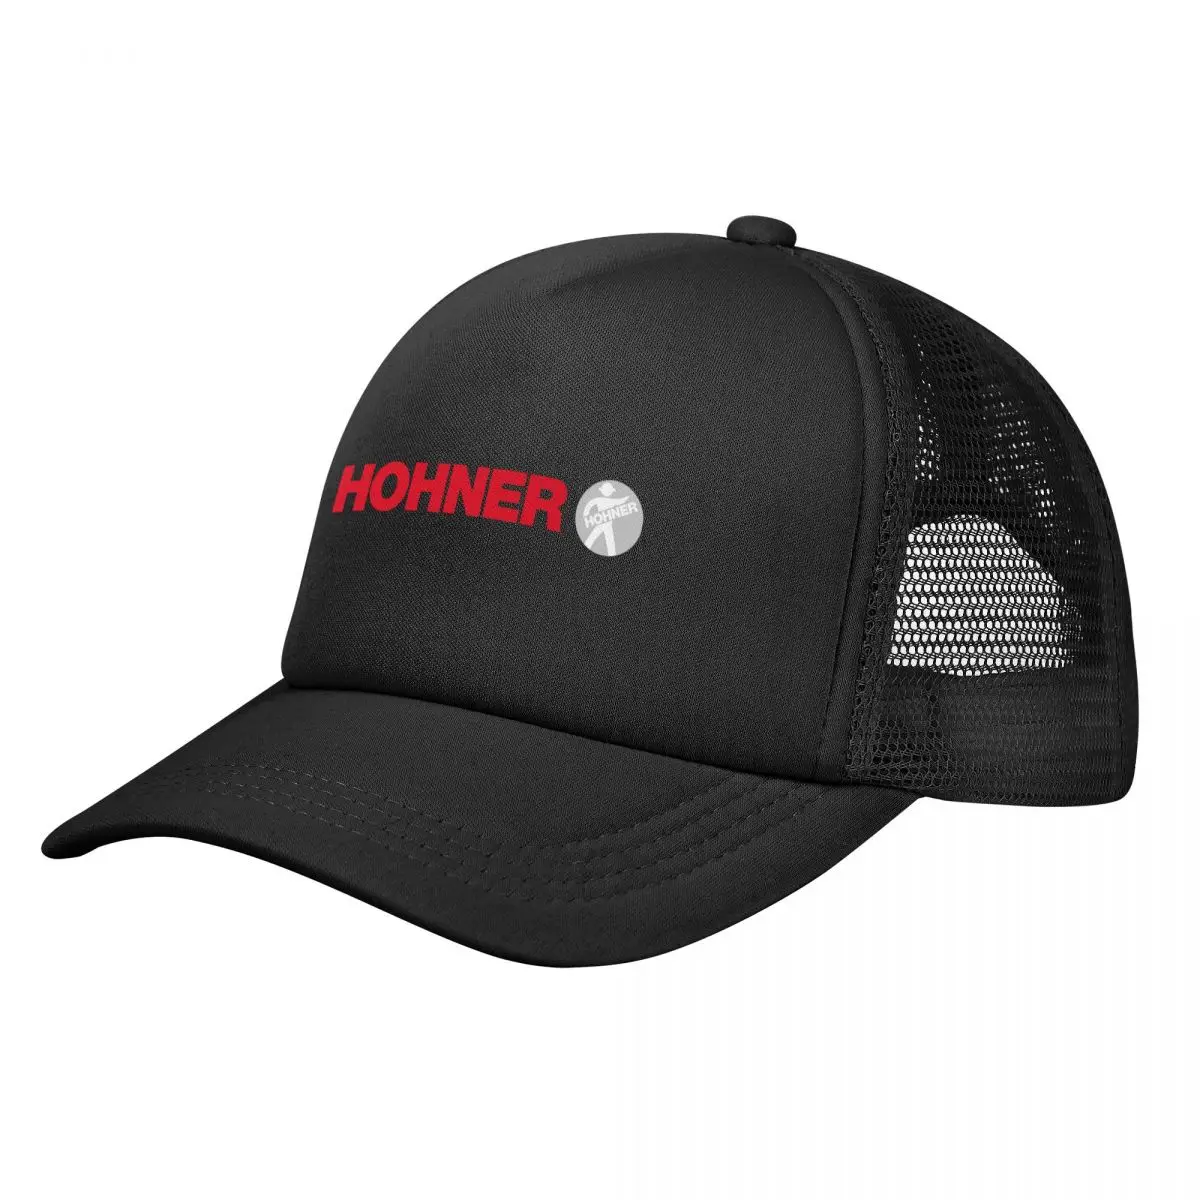 

Hohner Baseball Cap for Men Women Bulk Snapback Trucker Hats Adjustable Unisex Fishing Mesh-Back Hats